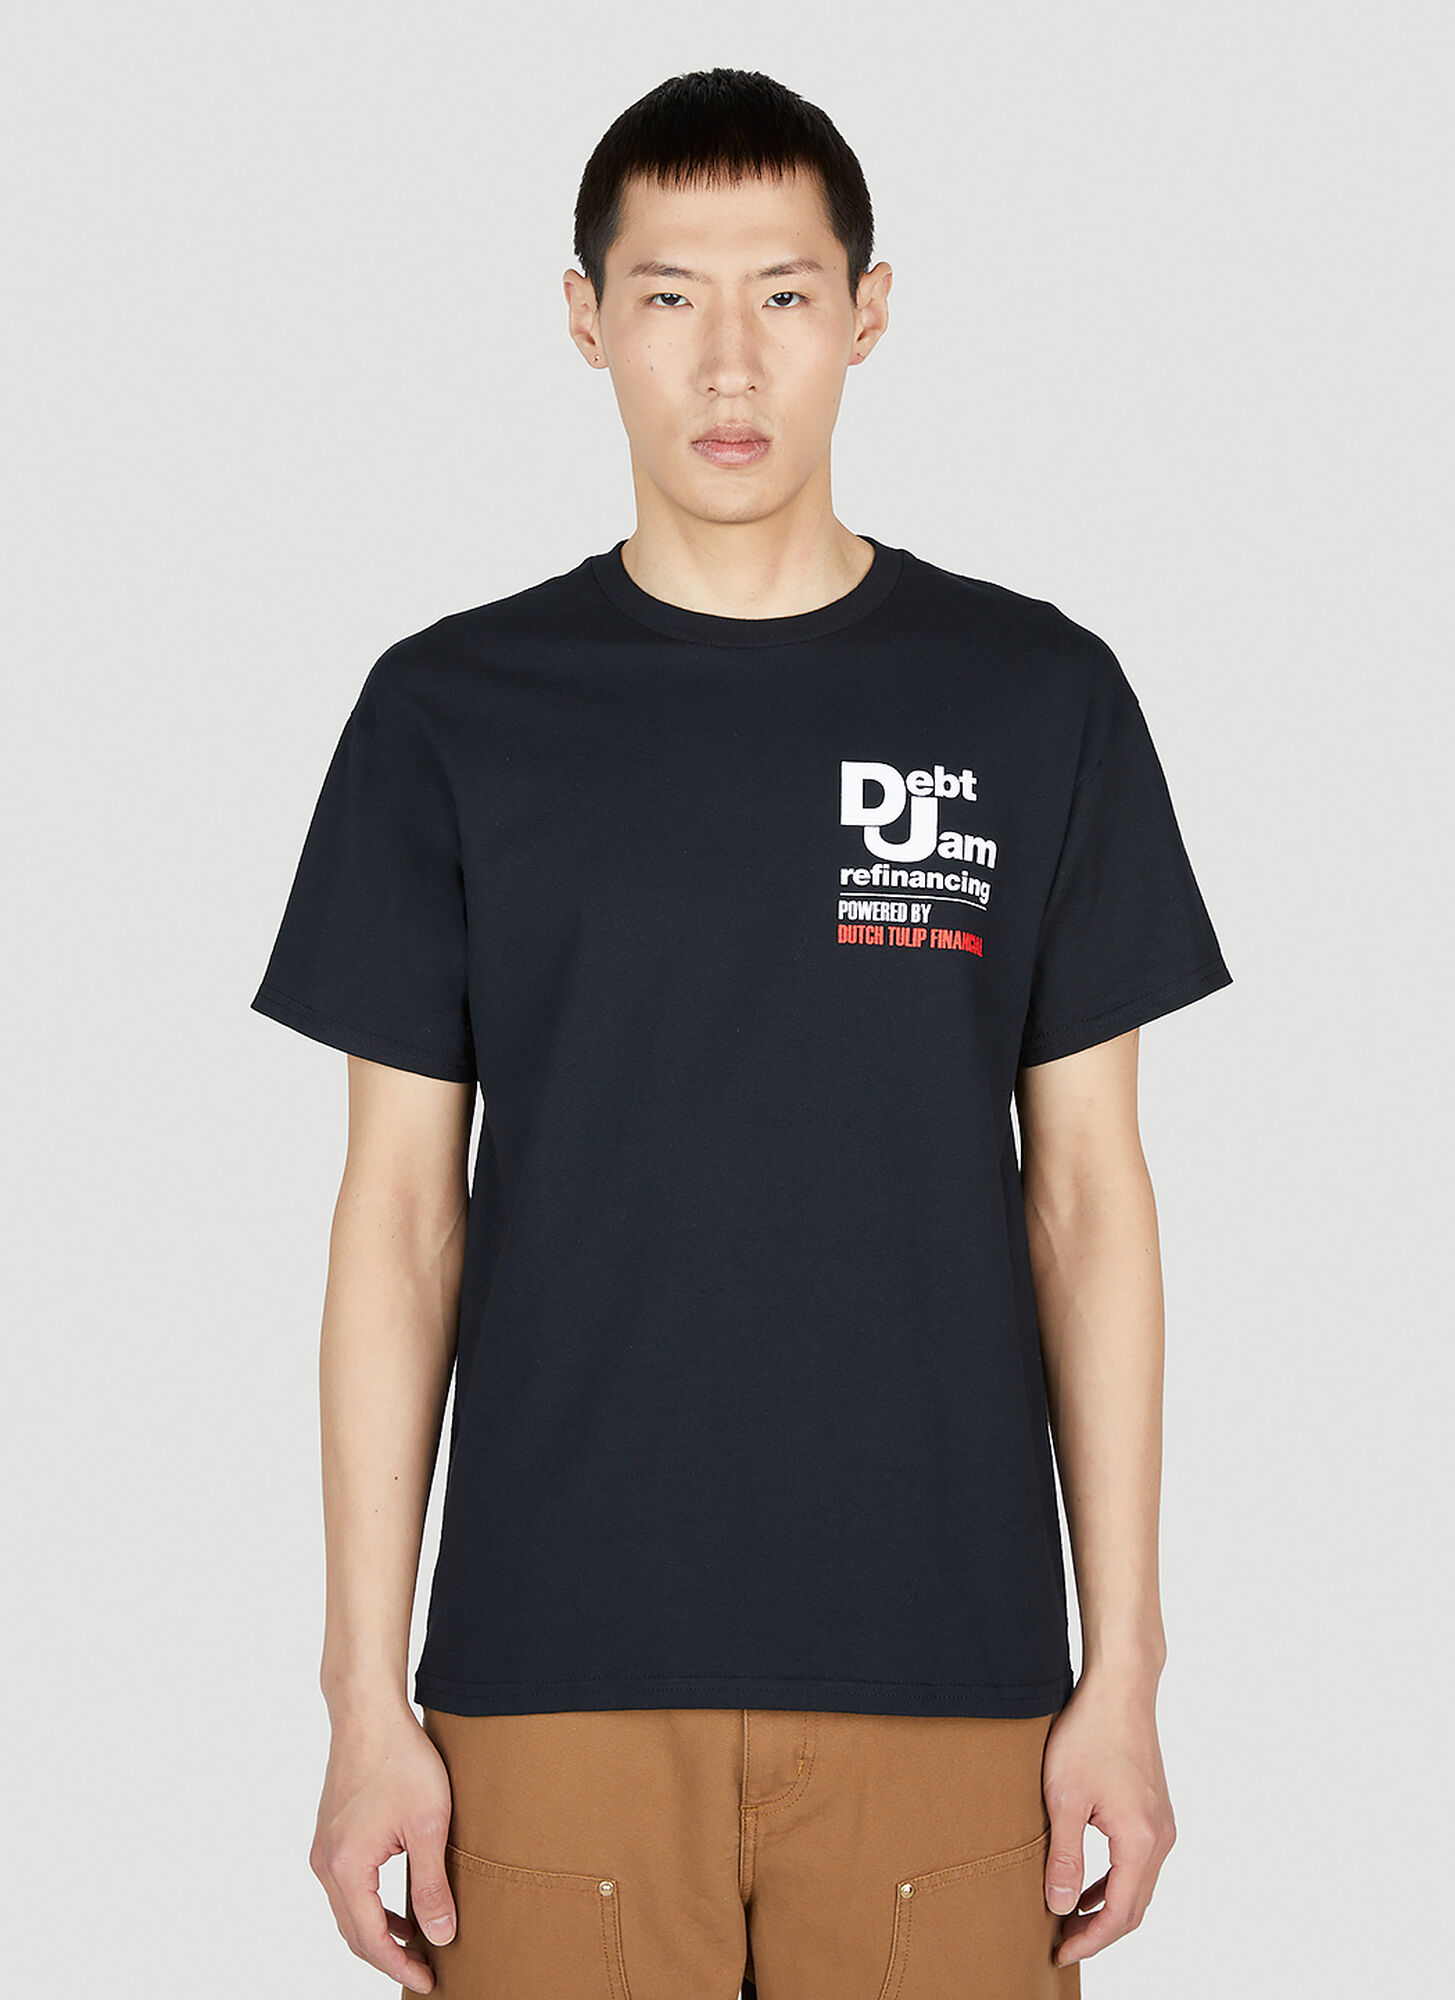 Dtf.nyc Debt Jam Short-sleeved T-shirt Male Black